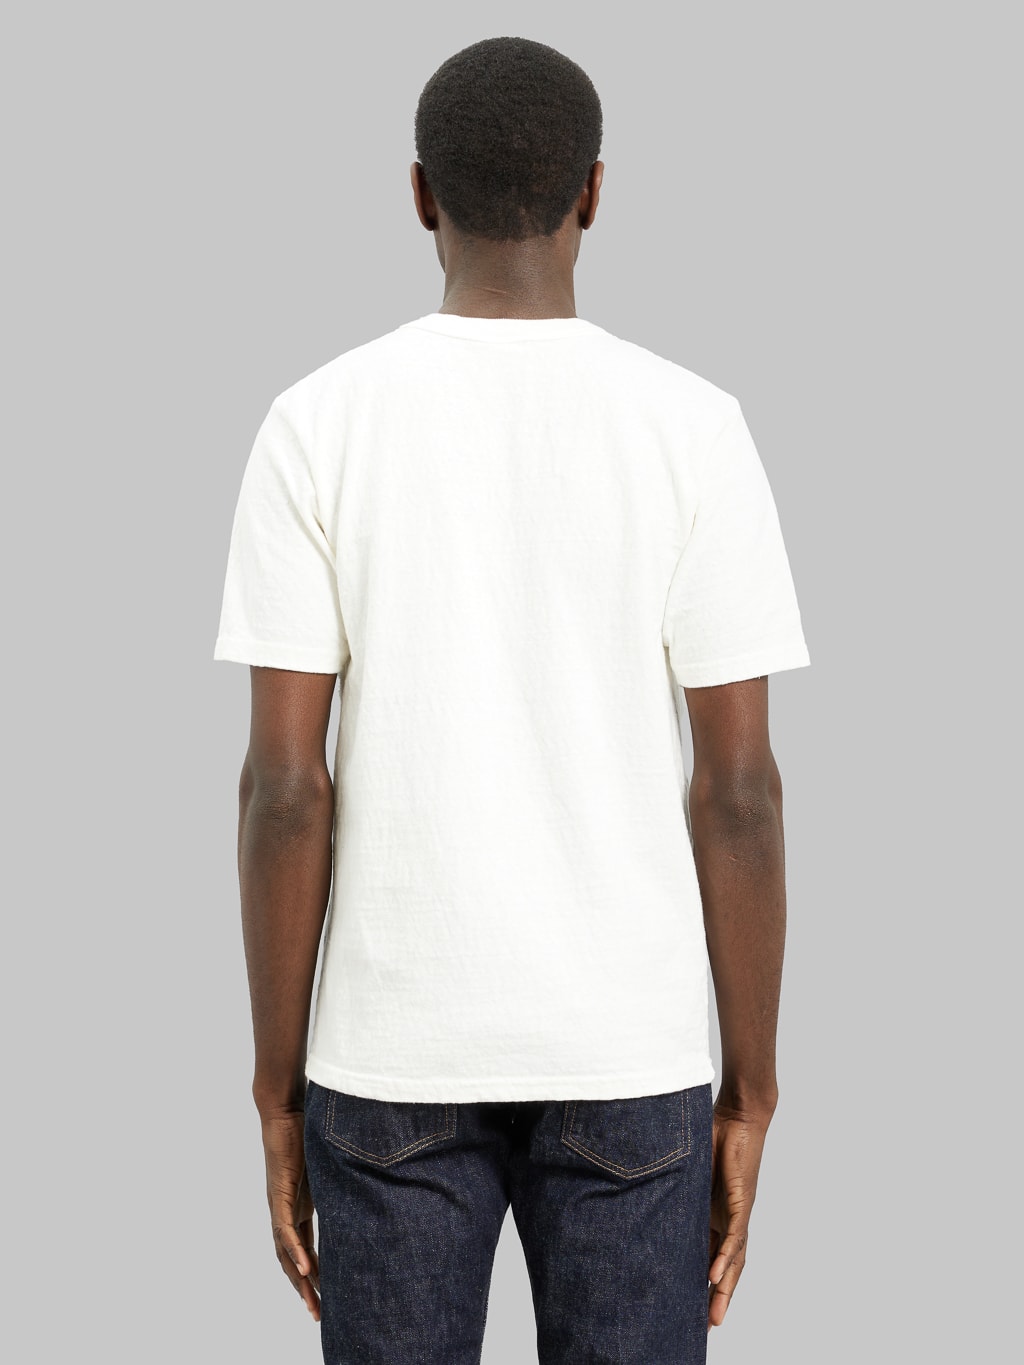 UES No 8 Slub Nep Short Sleeve Tshirt White model back fit